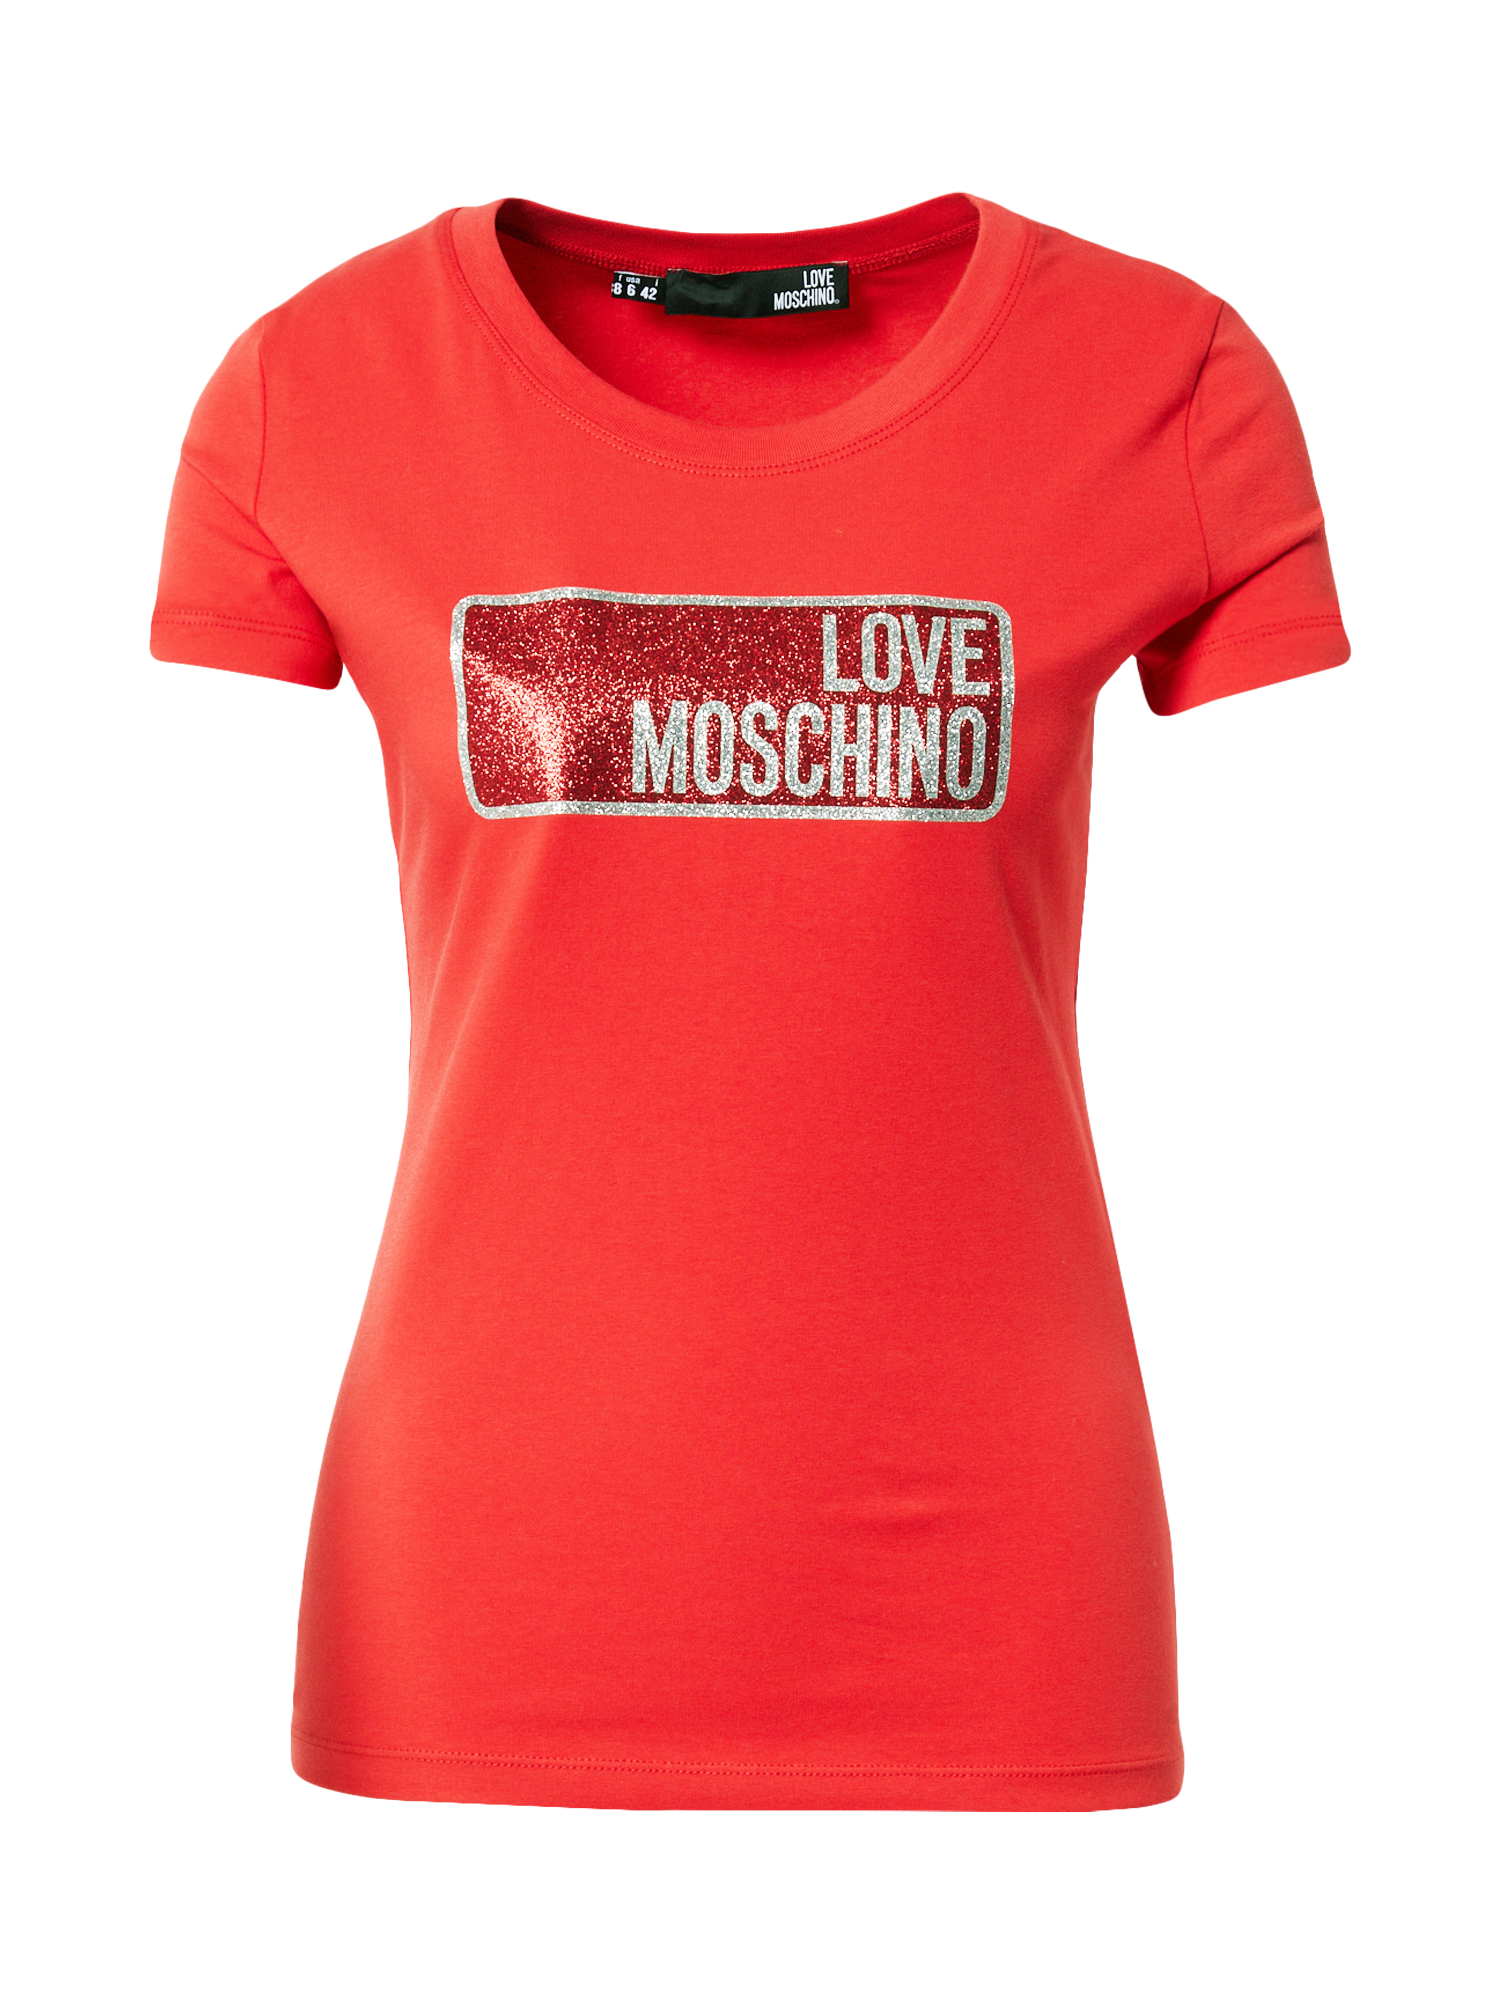 Kobiety Odzież Love Moschino Koszulka w kolorze Jasnoczerwony, Czerwonym 